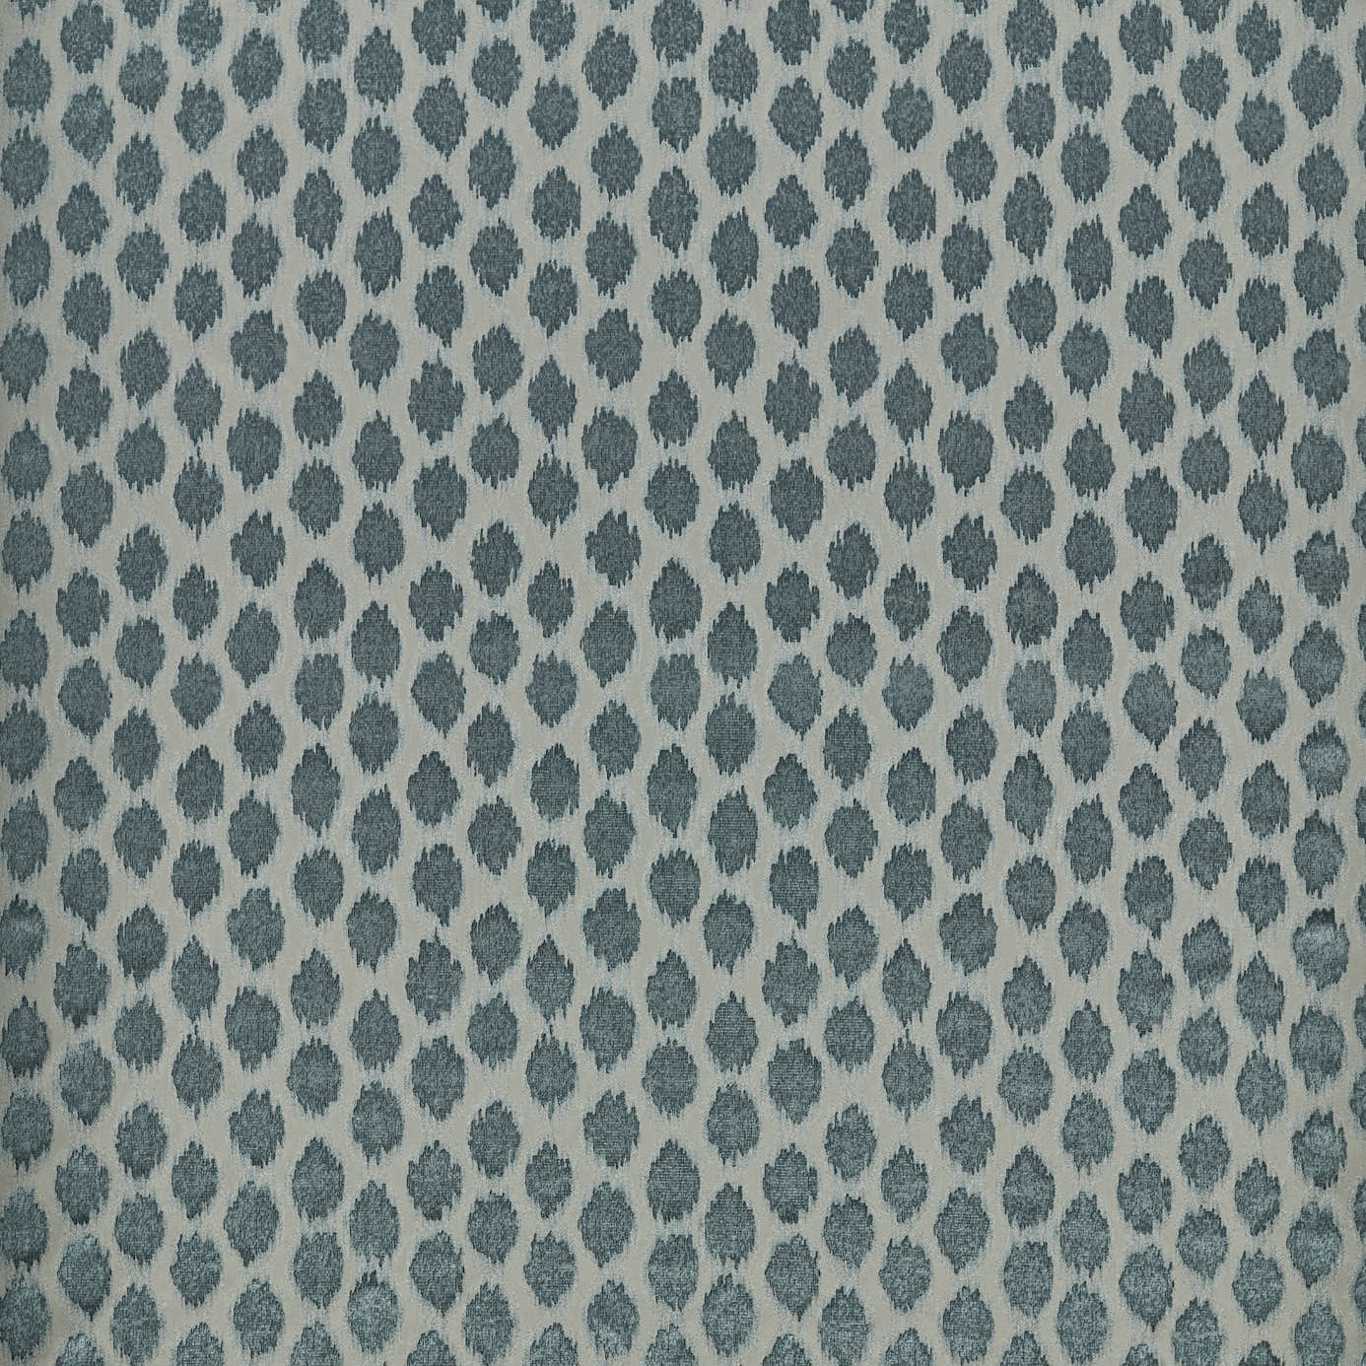 Ikat Spot Blue Stone Fabric by ZOF